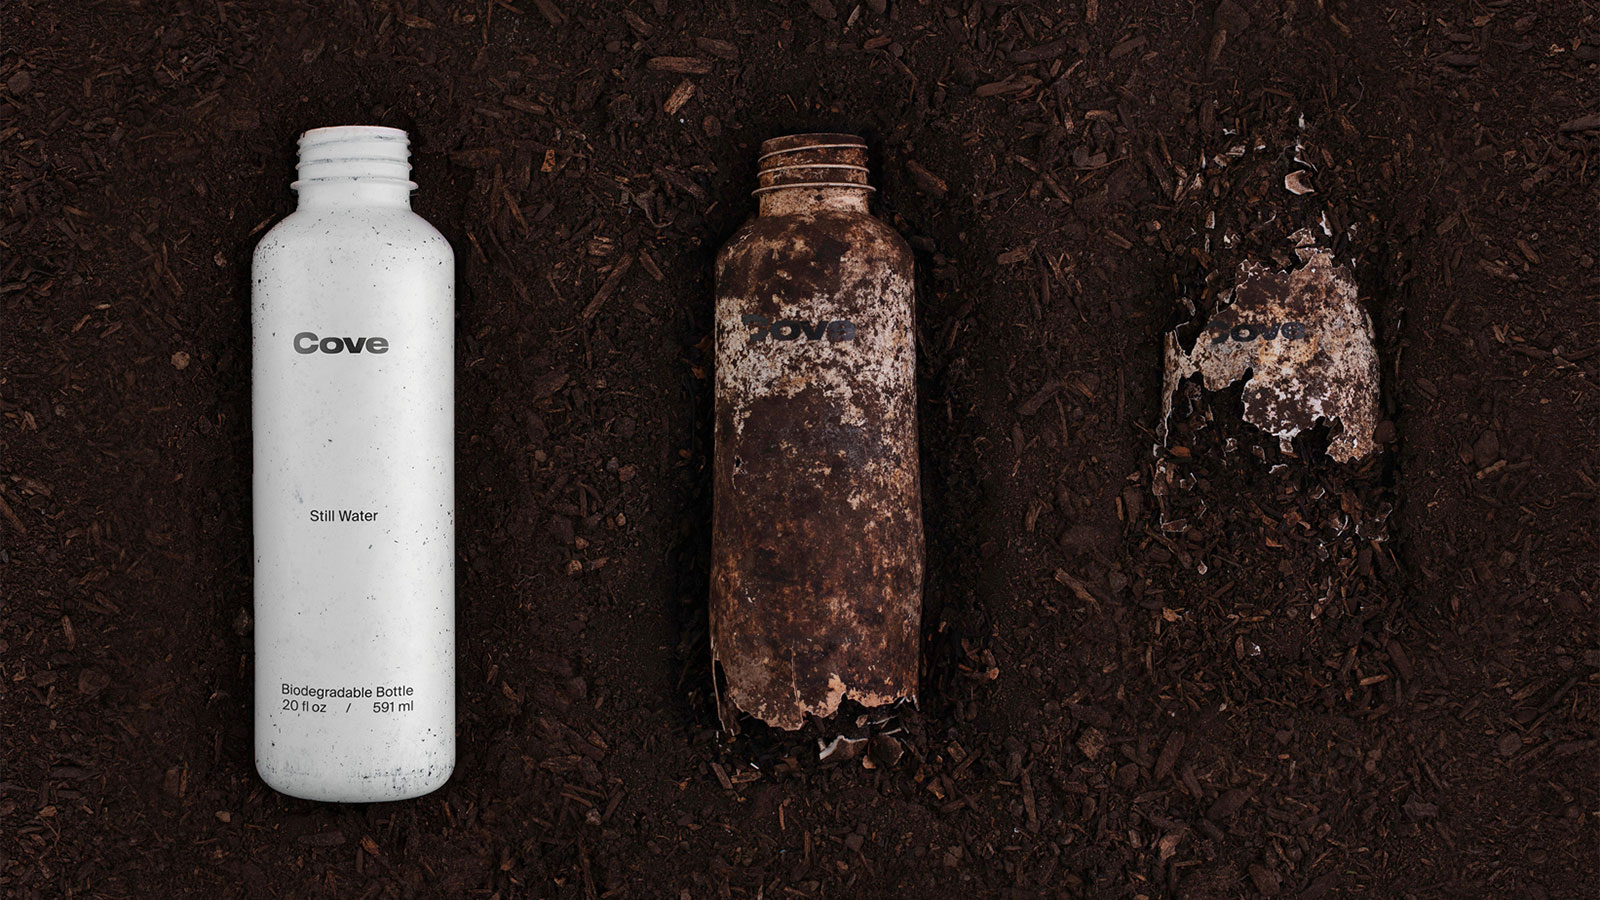 Cove lança garrafa biodegradável para combater poluição plástica